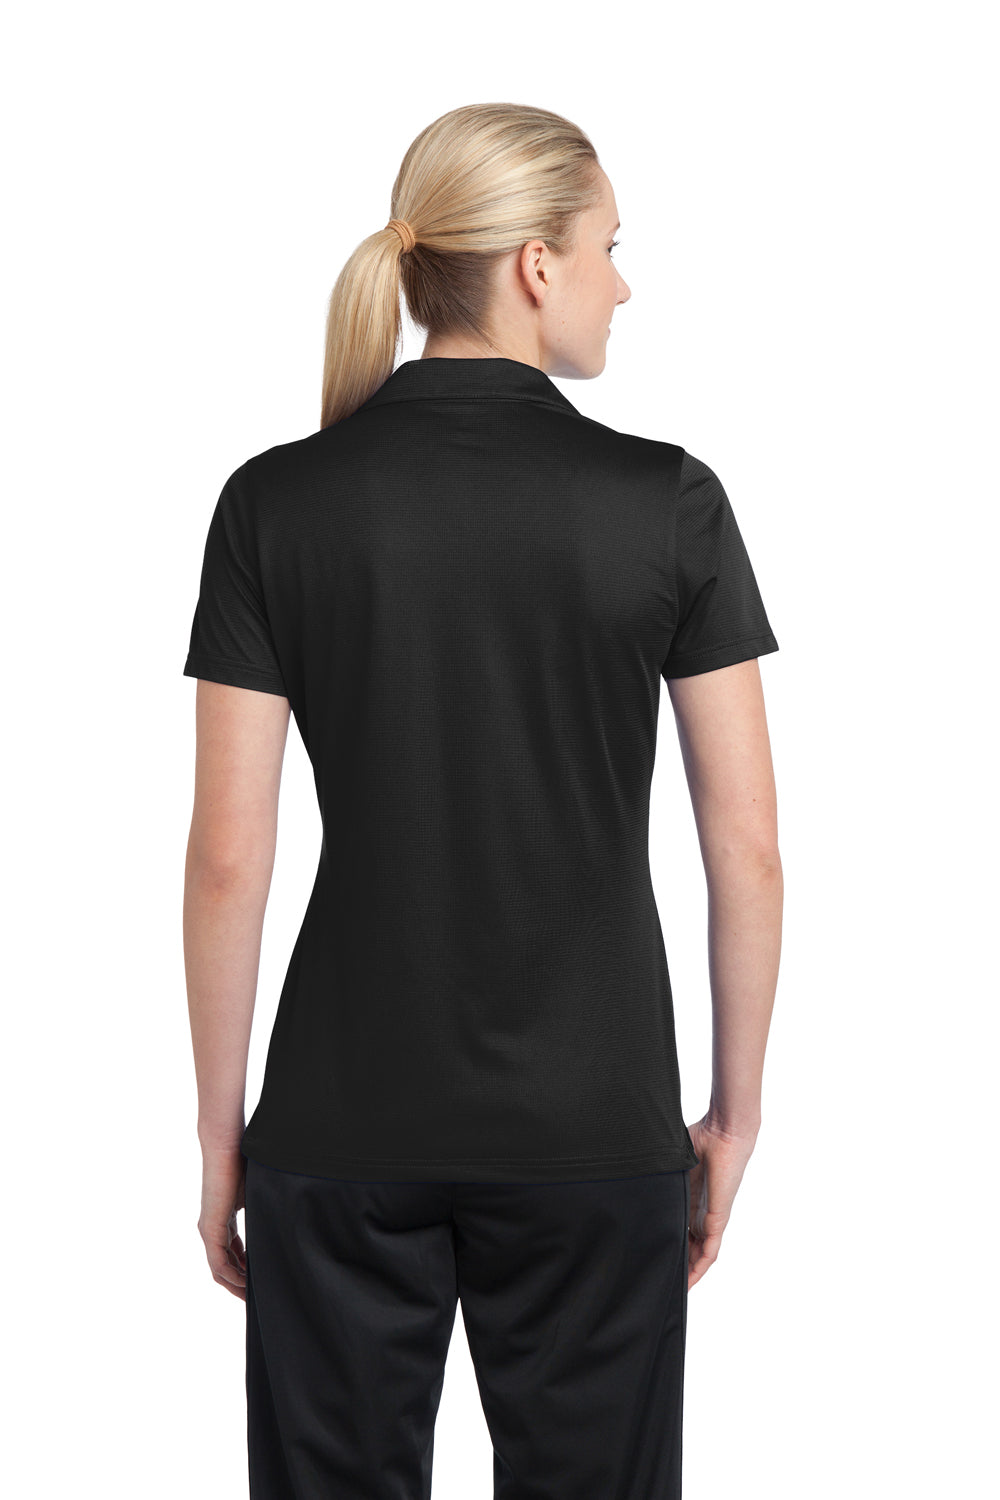 Sport-Tek LST690 Womens Active Mesh Moisture Wicking Short Sleeve Polo Shirt Black Back